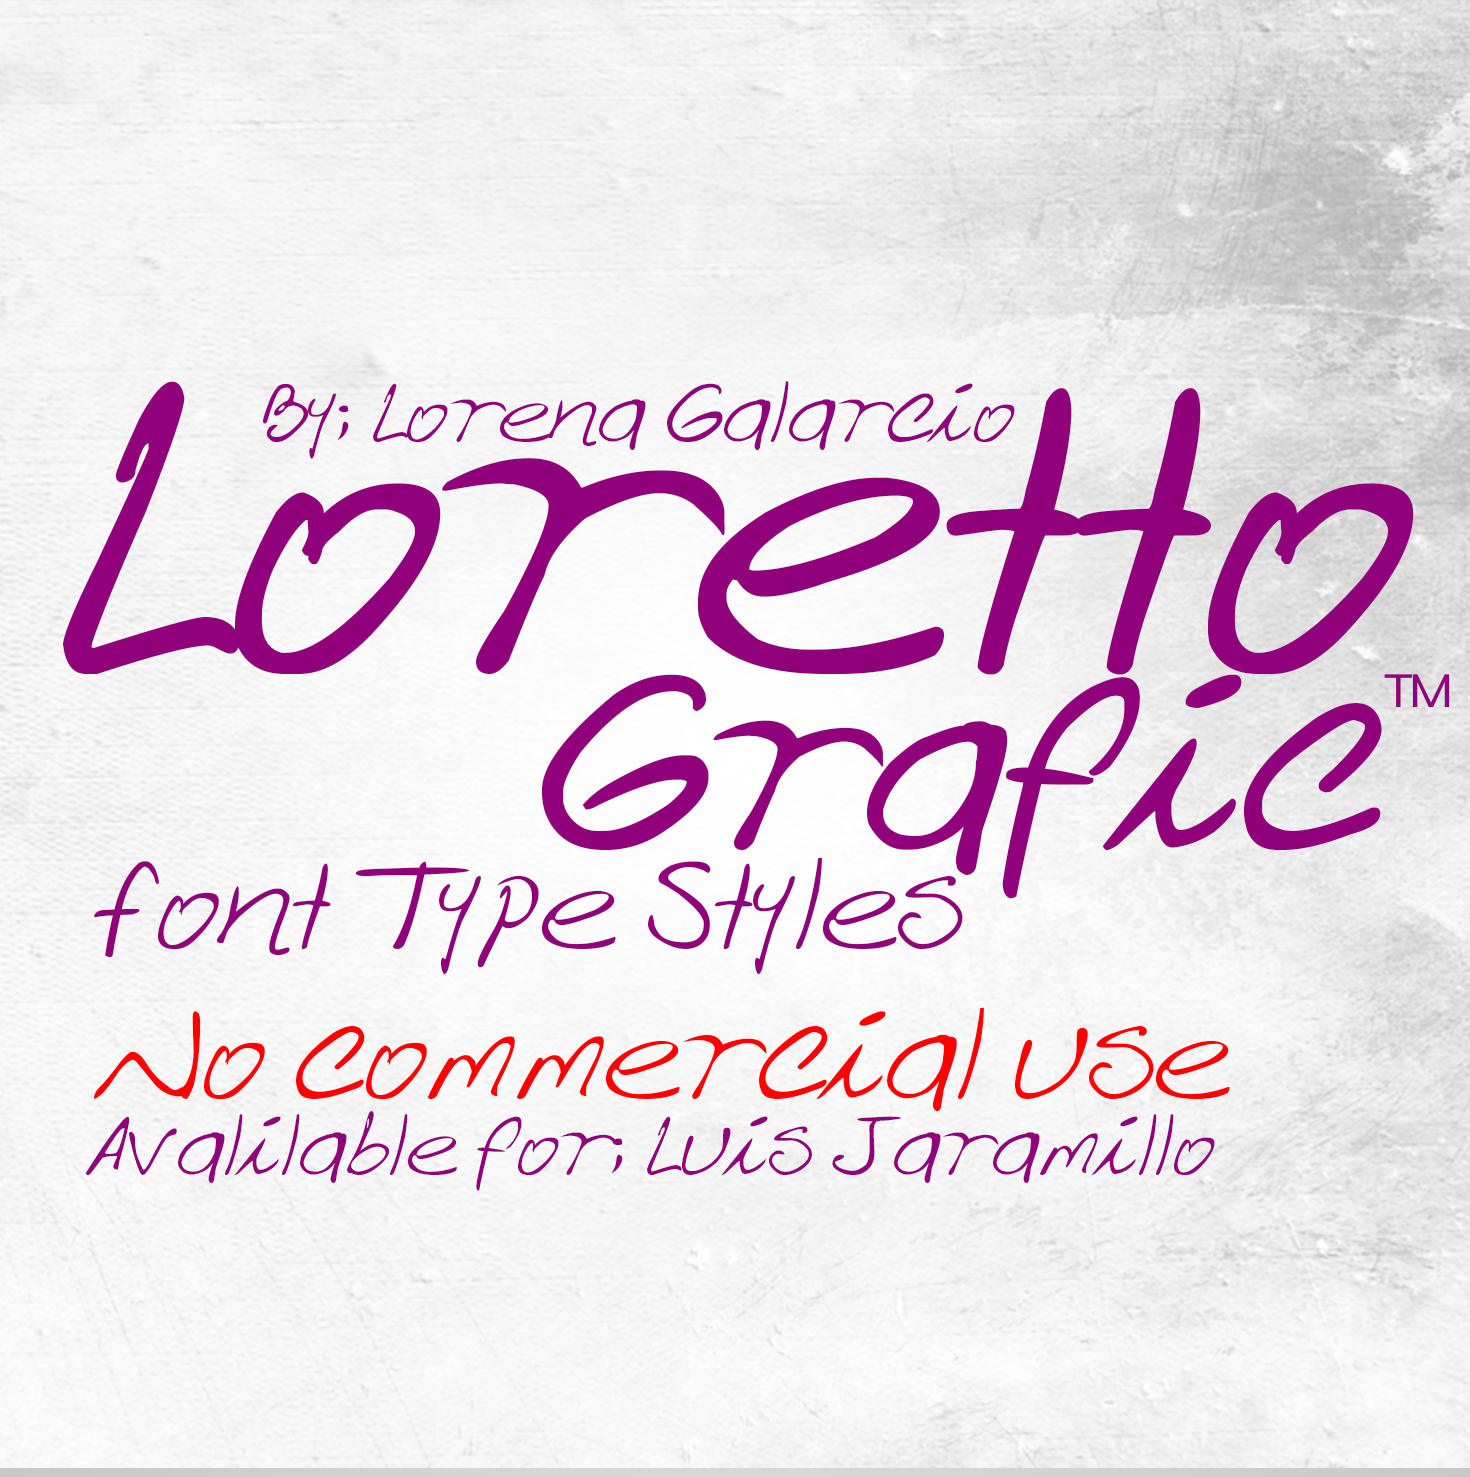 Loretto Grafic font